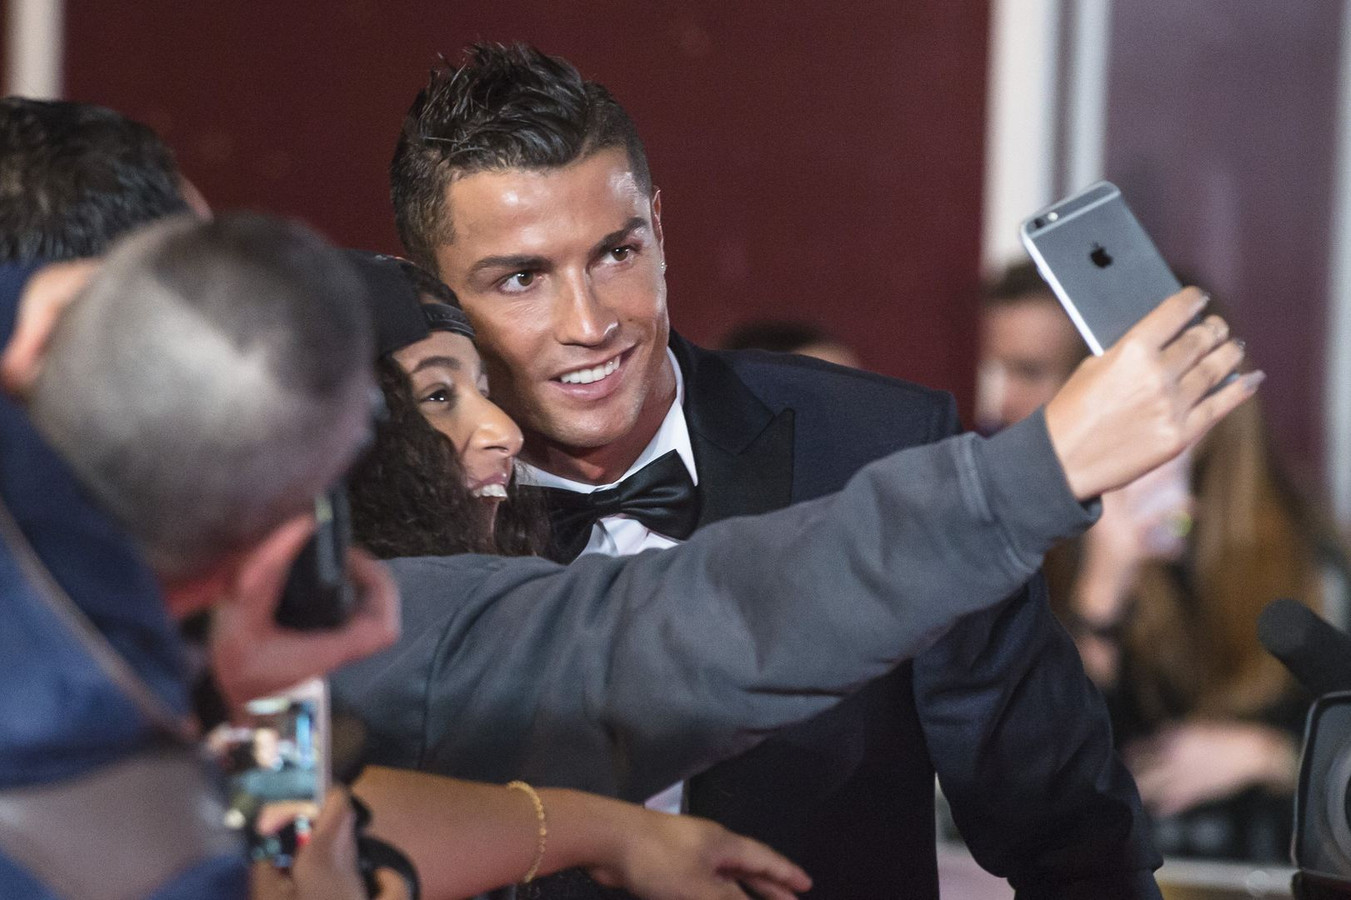 La semaine passée, Cristiano Ronaldo avait provoqué la colère des supporters du Real Madrid en déclarant: "Quitter Madrid? Pourquoi pas?".